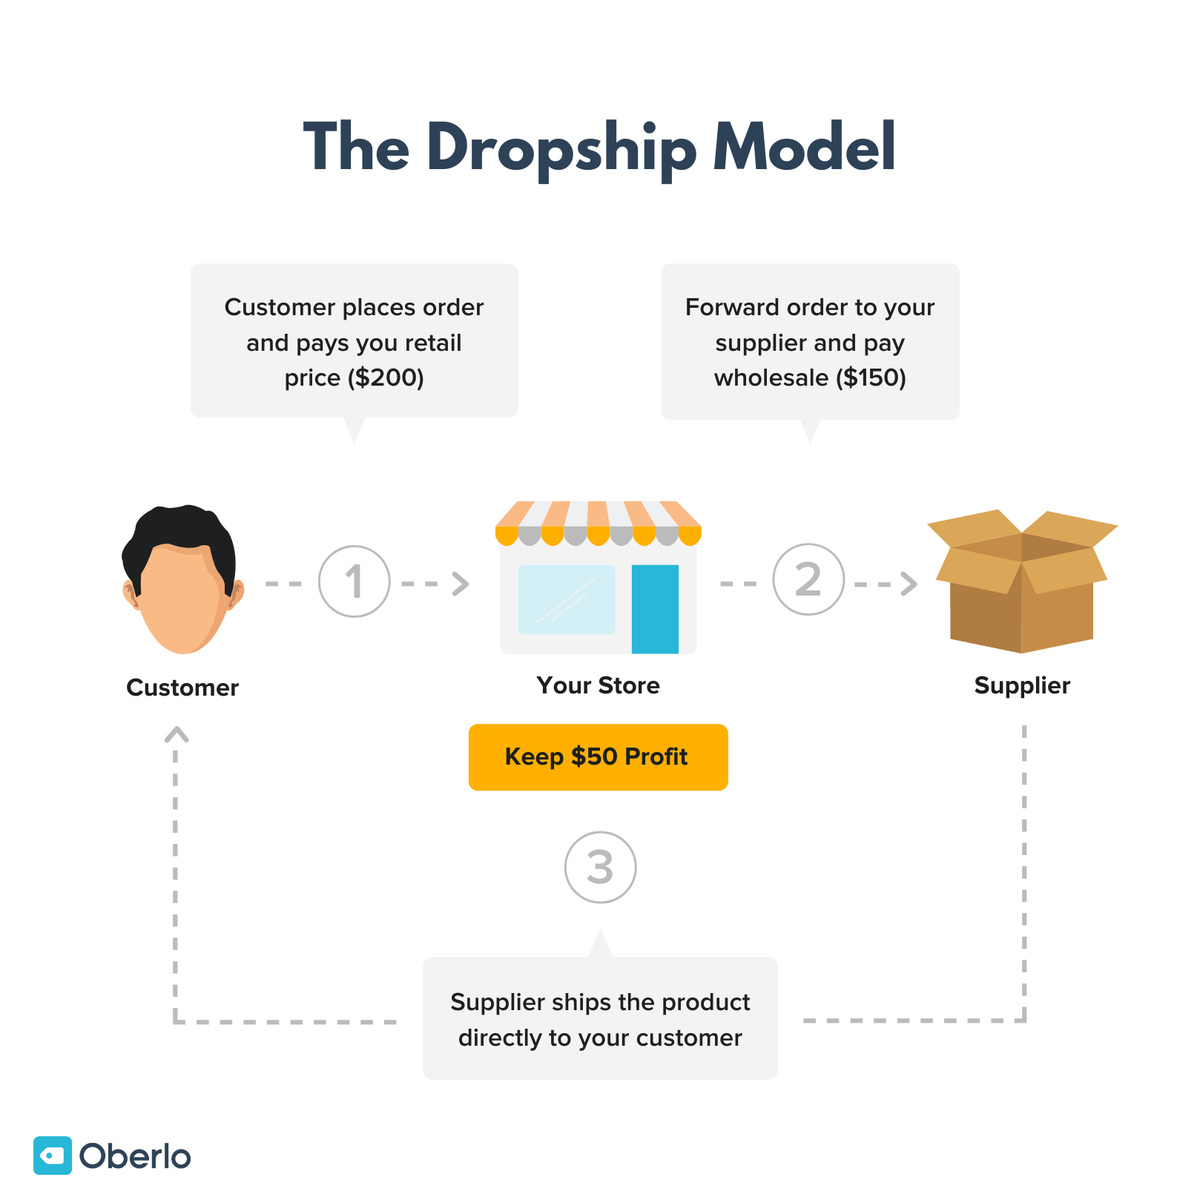 Imagen que muestra el modelo de negocio de dropship.